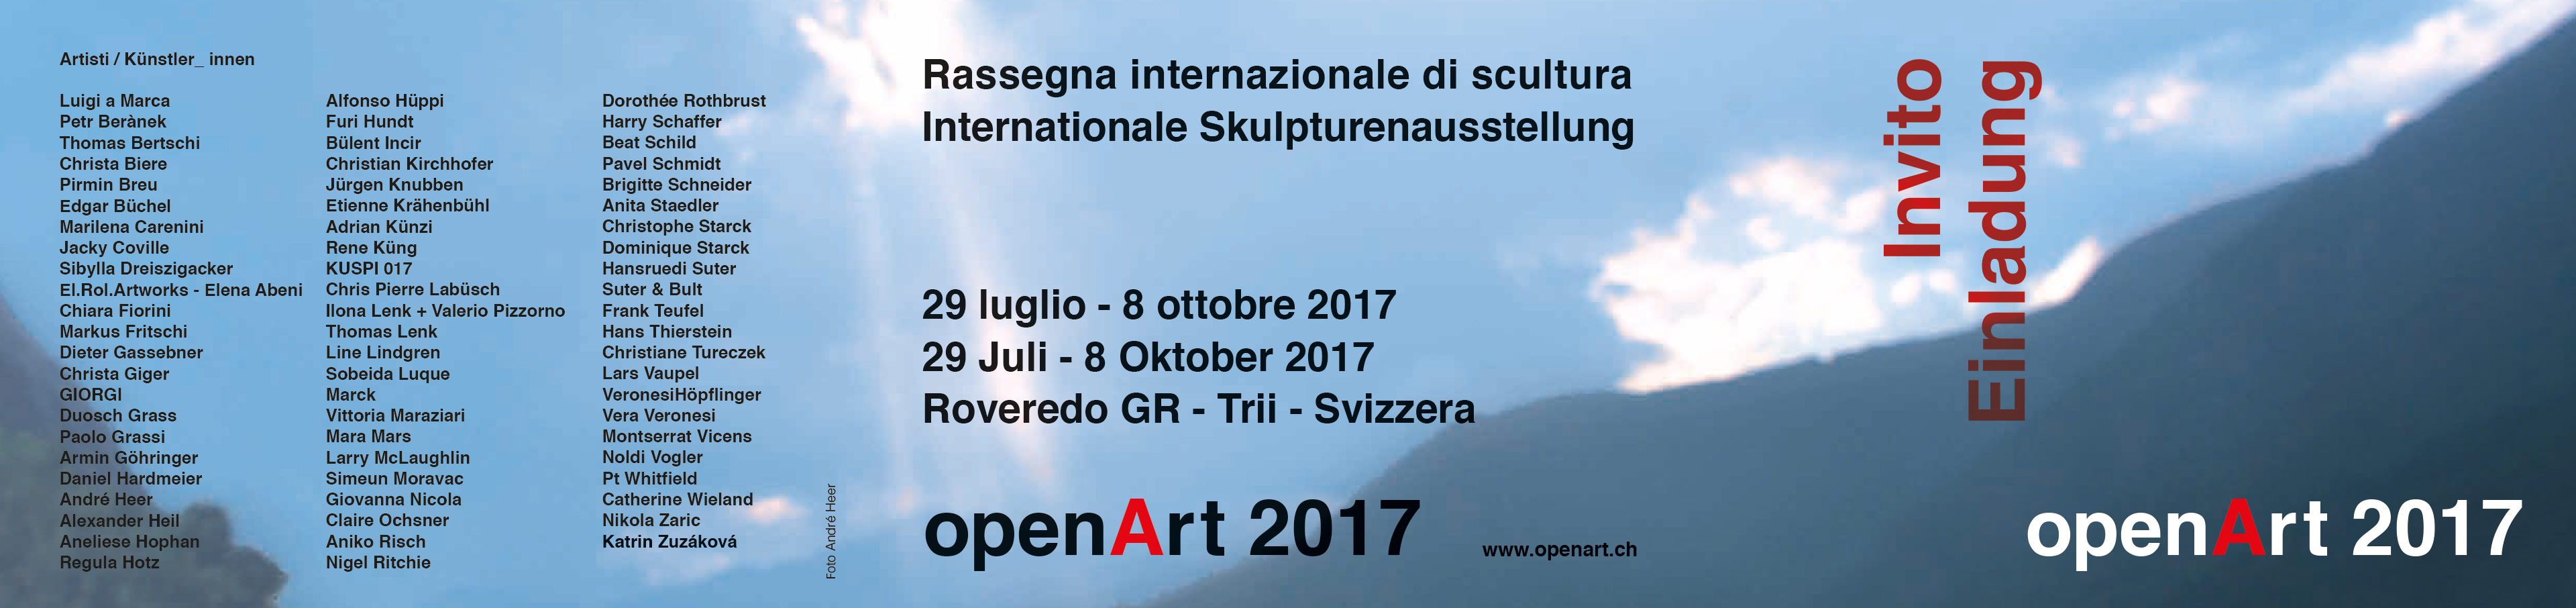 openArt 2017, 29.7. – 8.10.2017